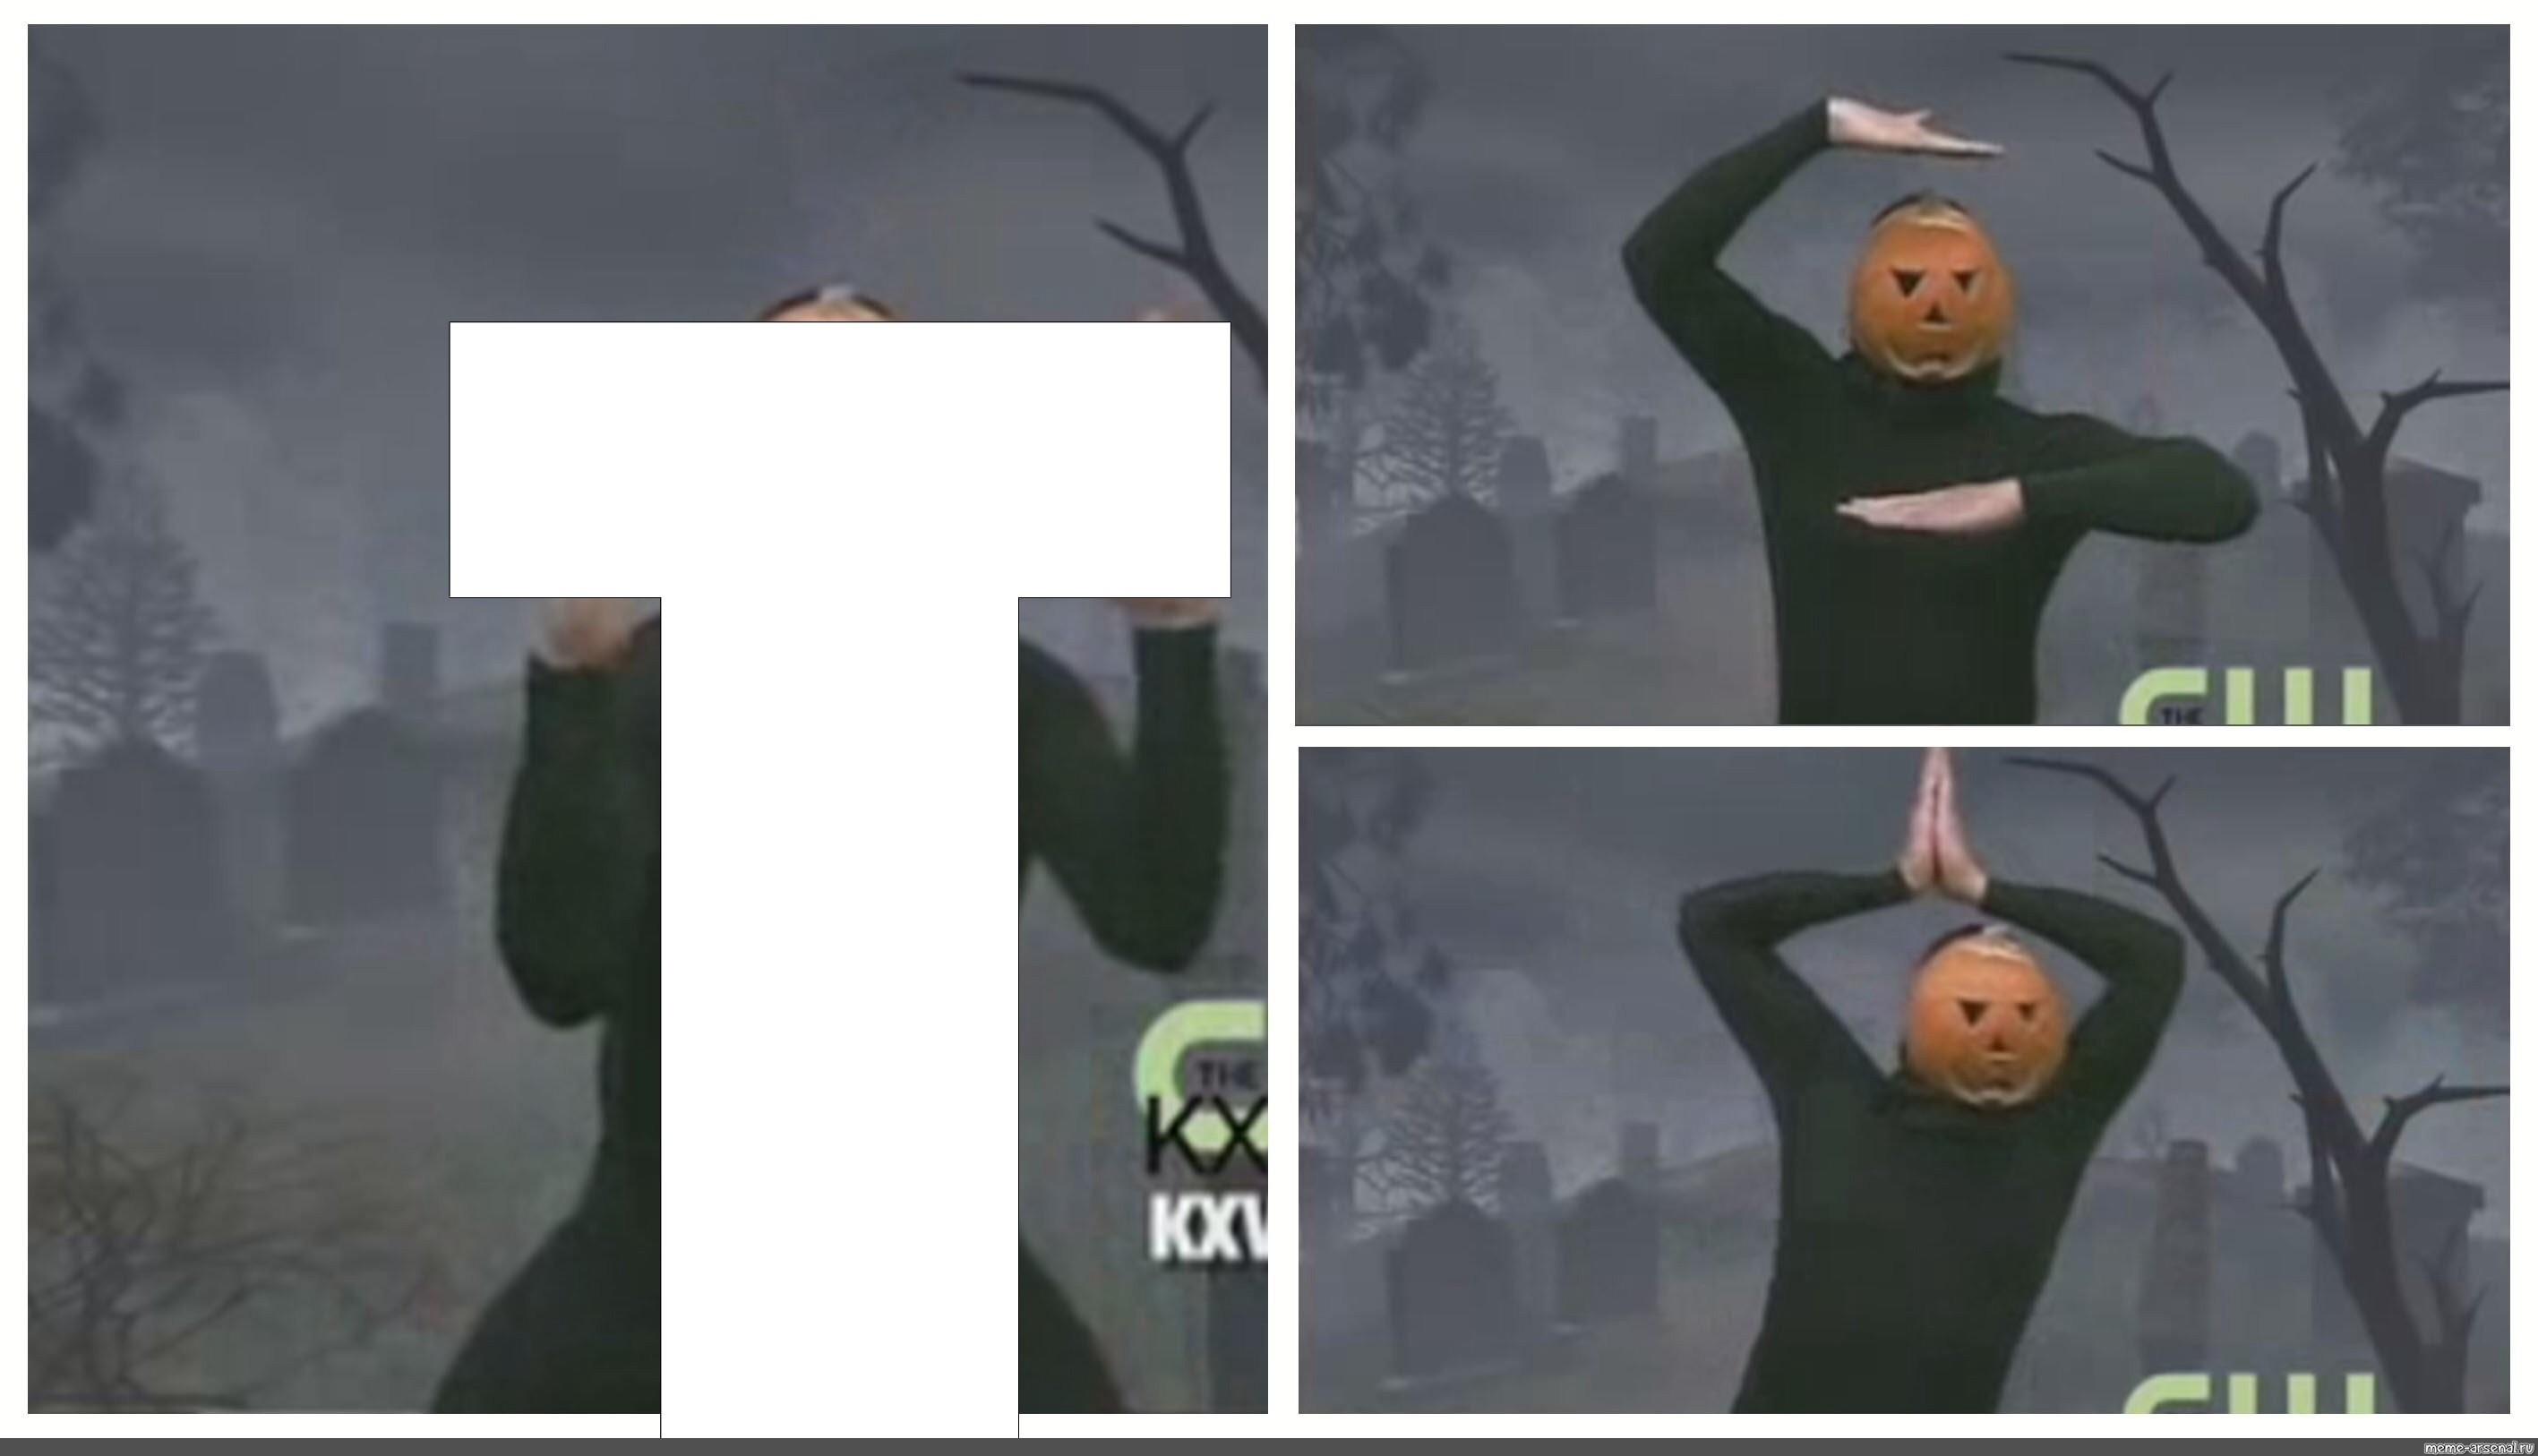 Hu I pumpkin , no Hu I meme, meme no Hu I am. 